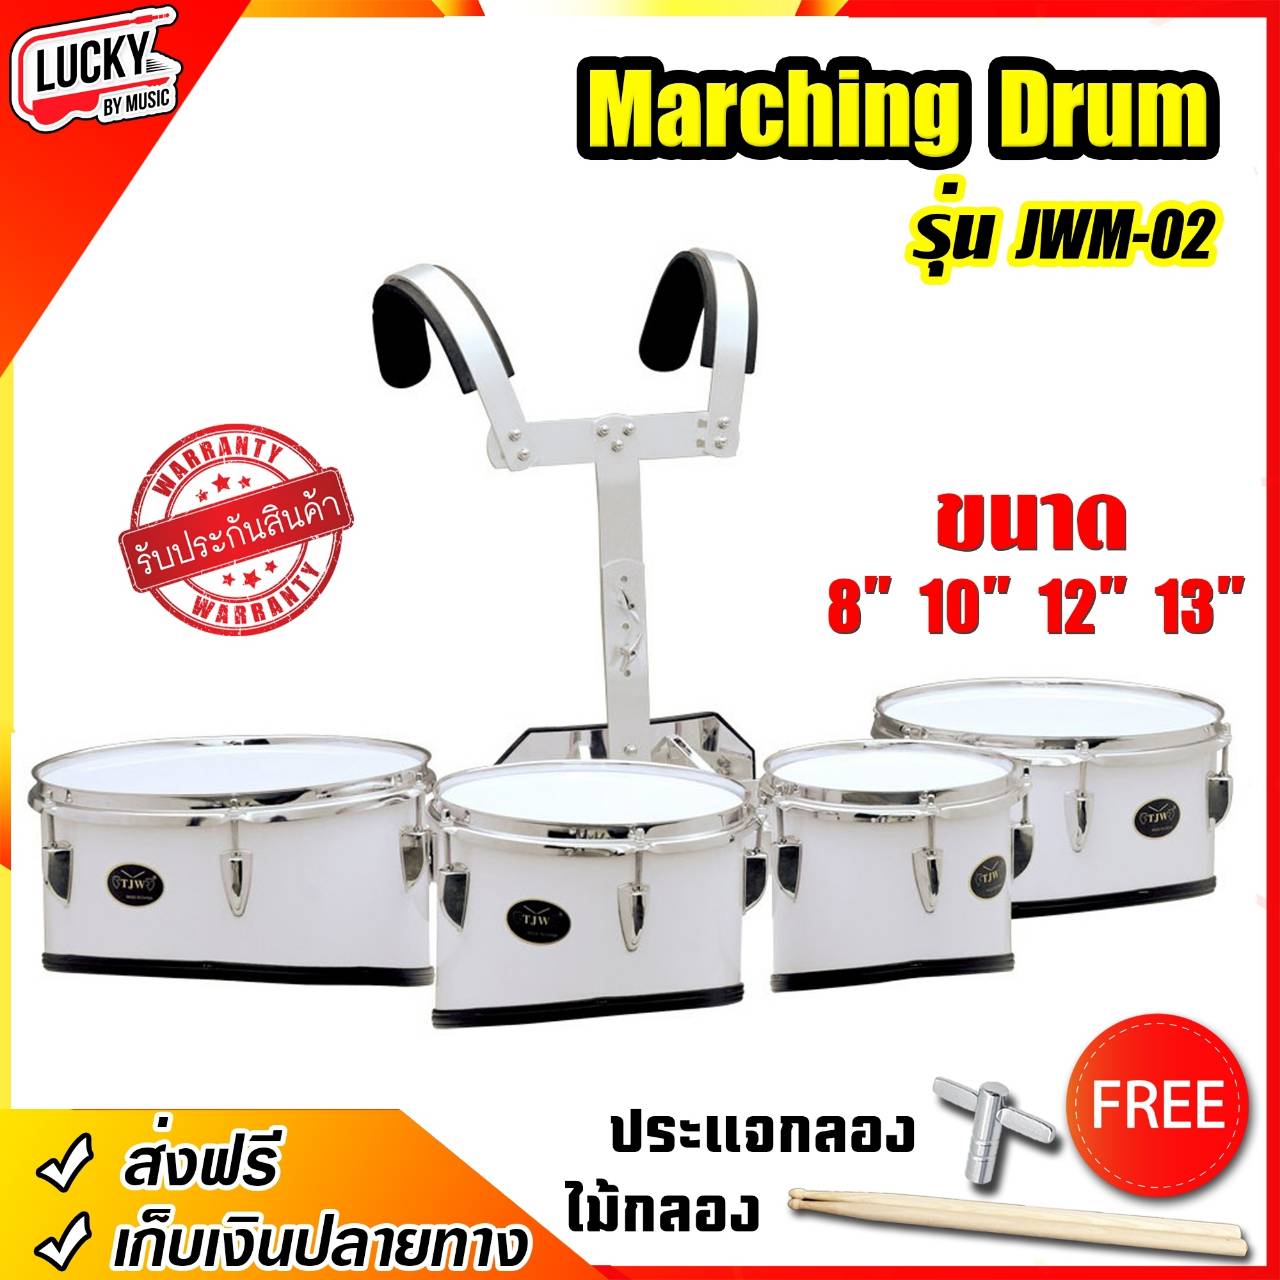 กลองทรีโอ 4 ใบ Marching Drum รุ่น-JWM-02 พร้อมขาแขวนอะลูมิเนียมอย่างดีแถมฟรี ไม้กลอง 1 คู่